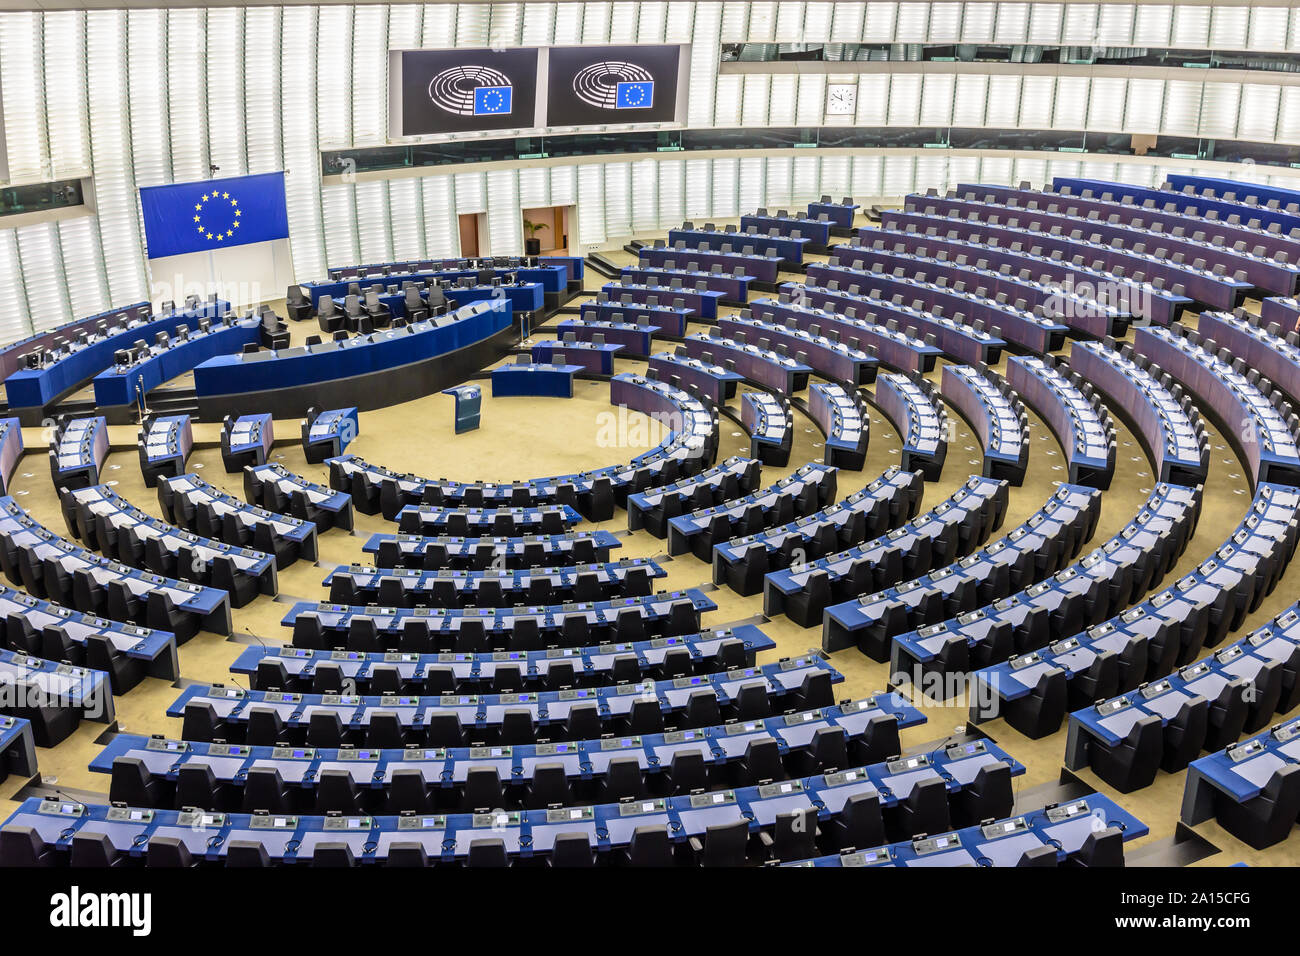 Vista general del hemiciclo del Parlamento Europeo en Bruselas, Bélgica, con la bandera de la Unión Europea sobre el escritorio del presidente. Foto de stock